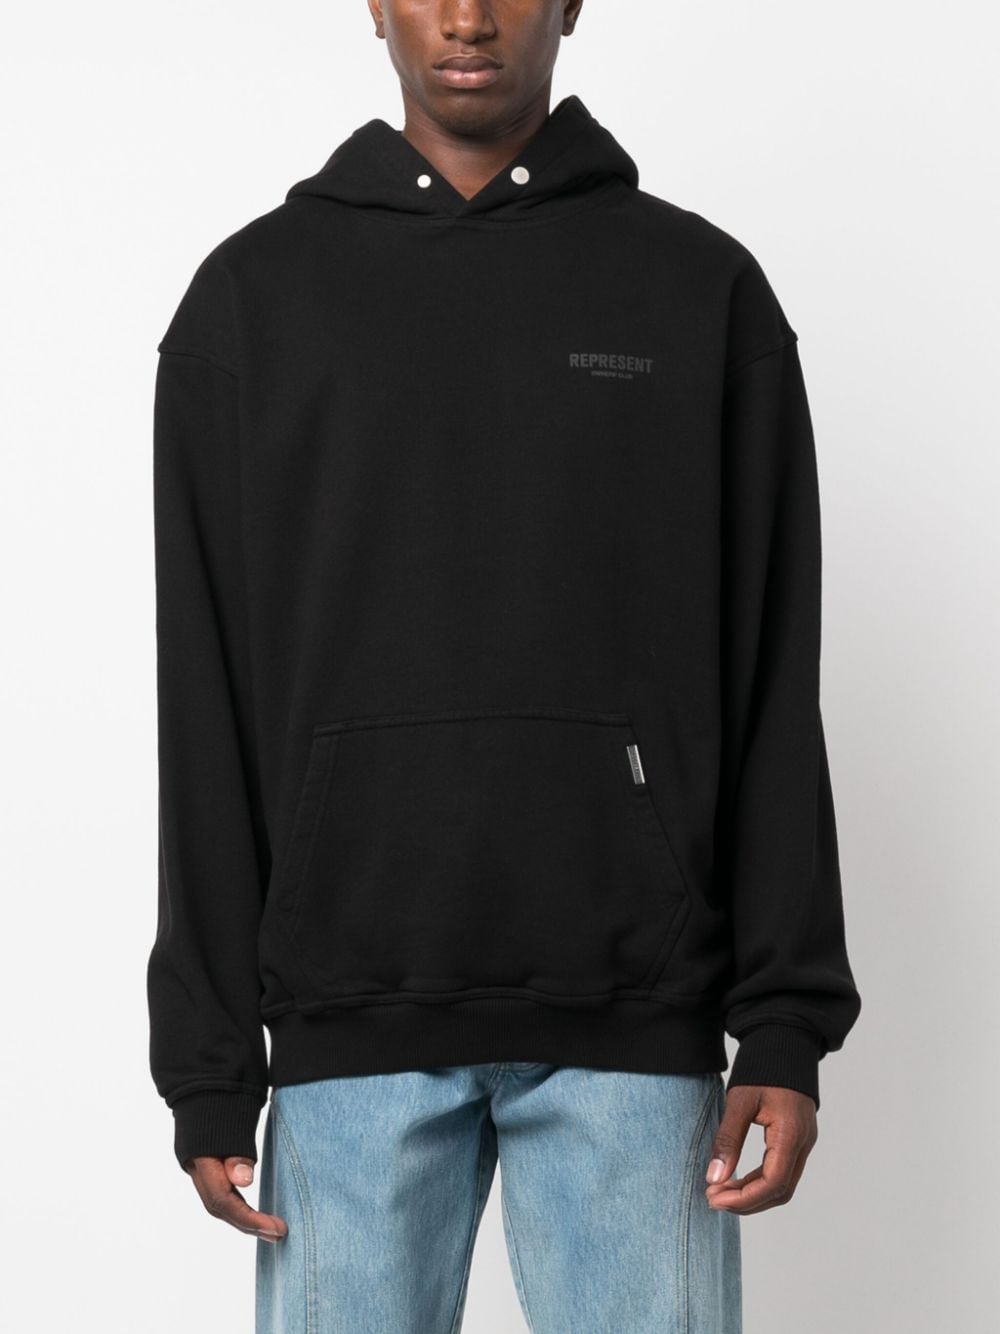 hoodie nera logotype tono su tono